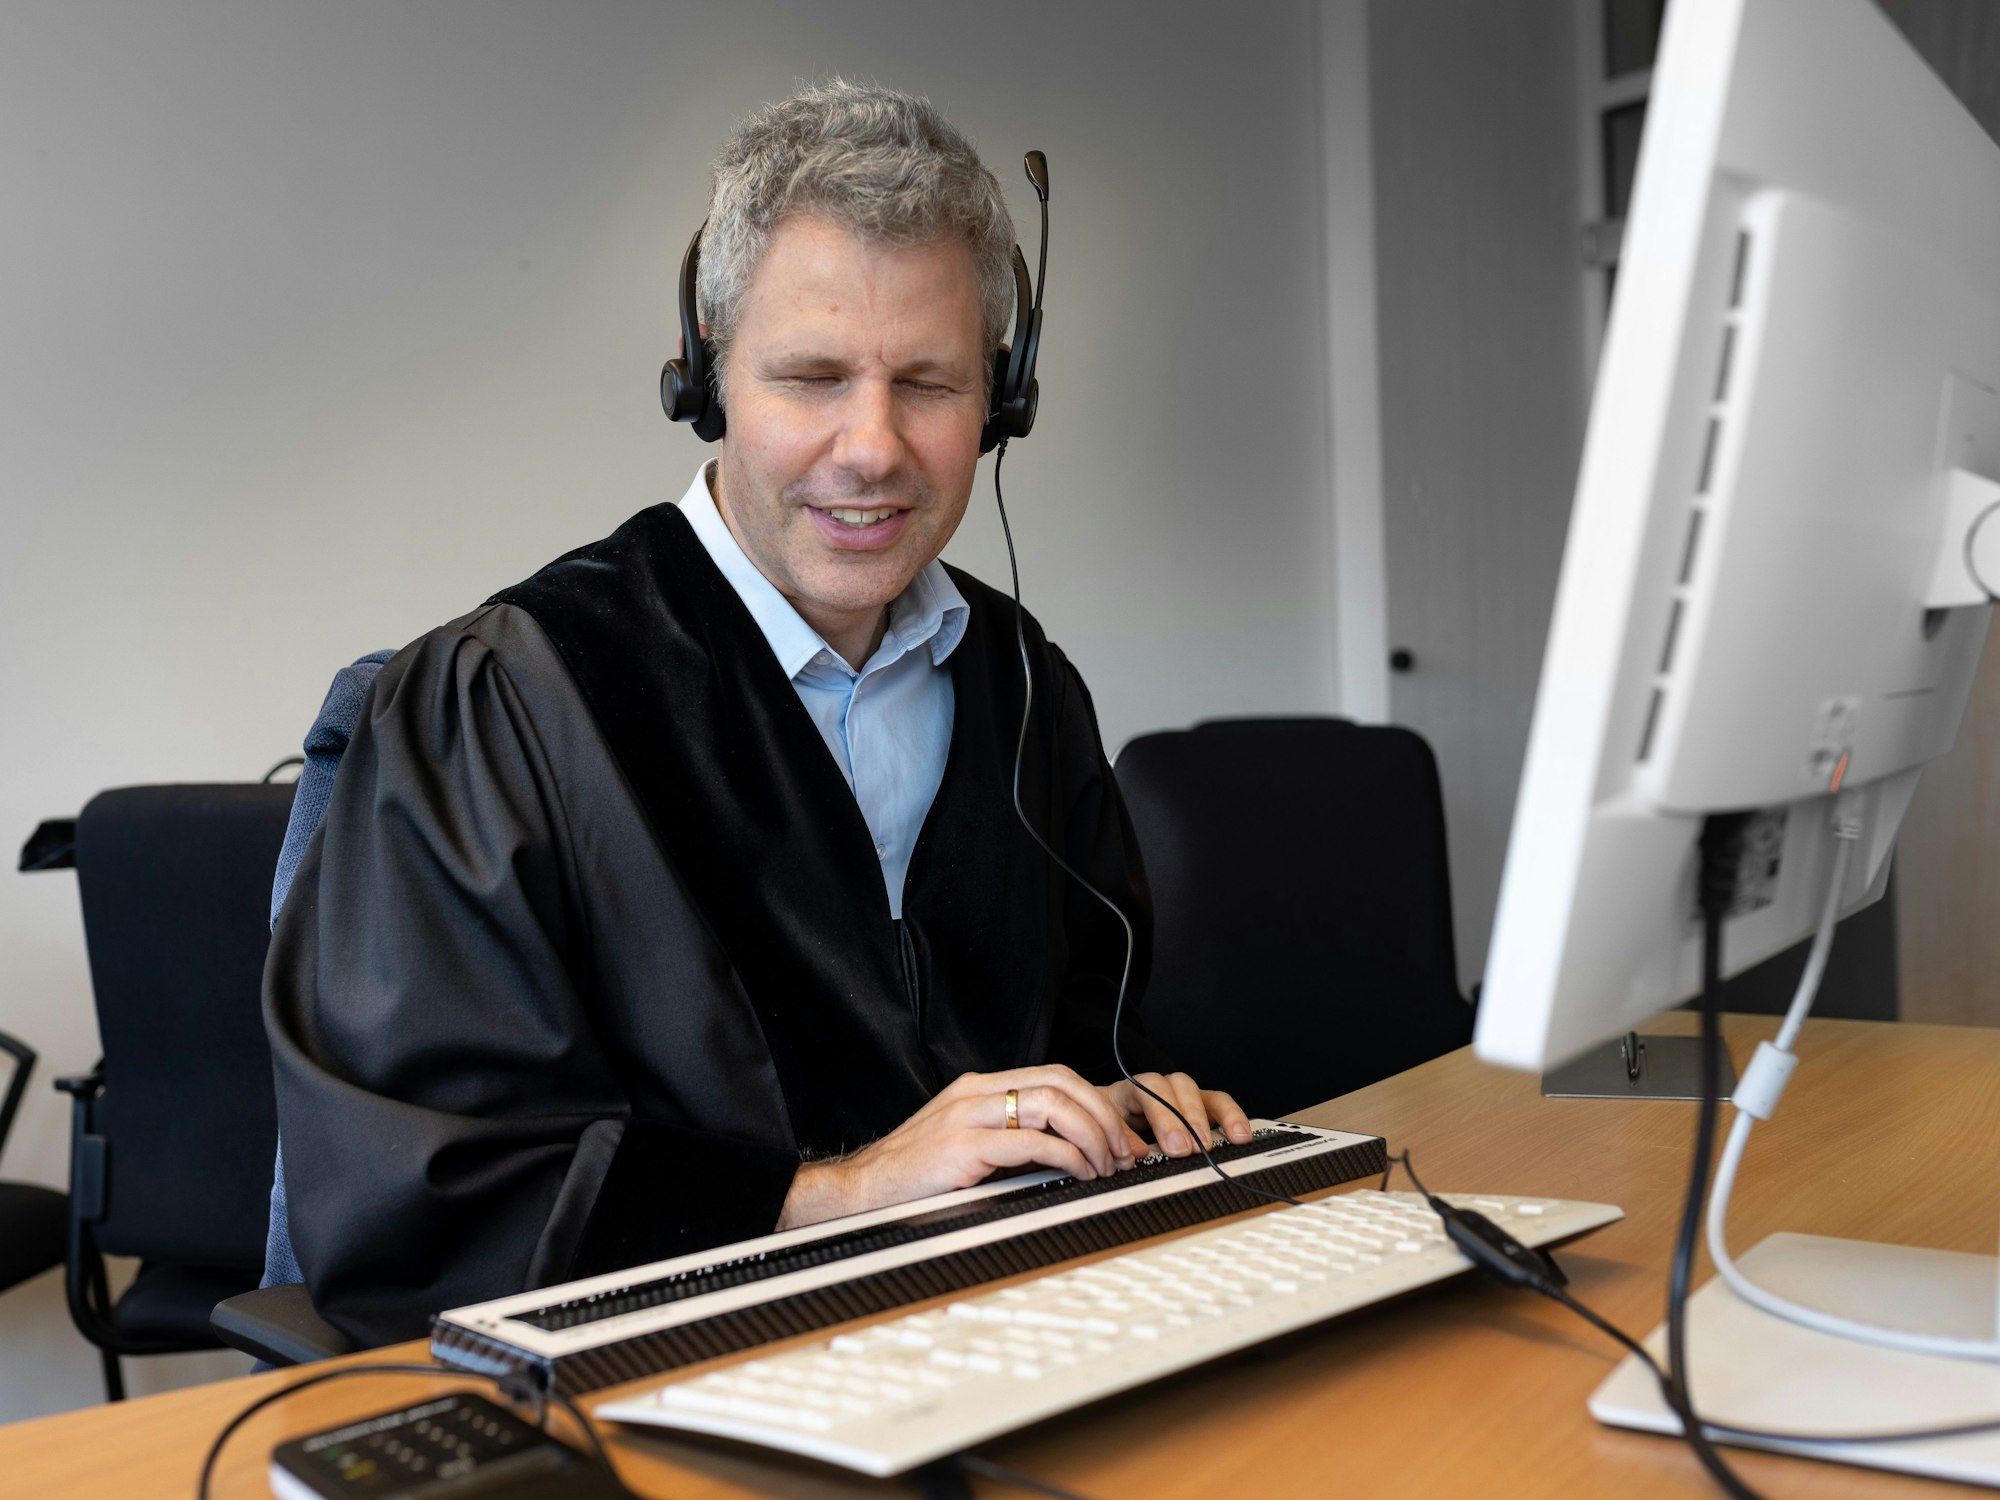 Der blinde Jurist Ulrich Badde sitzt an seinem Computer-Arbeitspatz mit einer Blindentastatur.